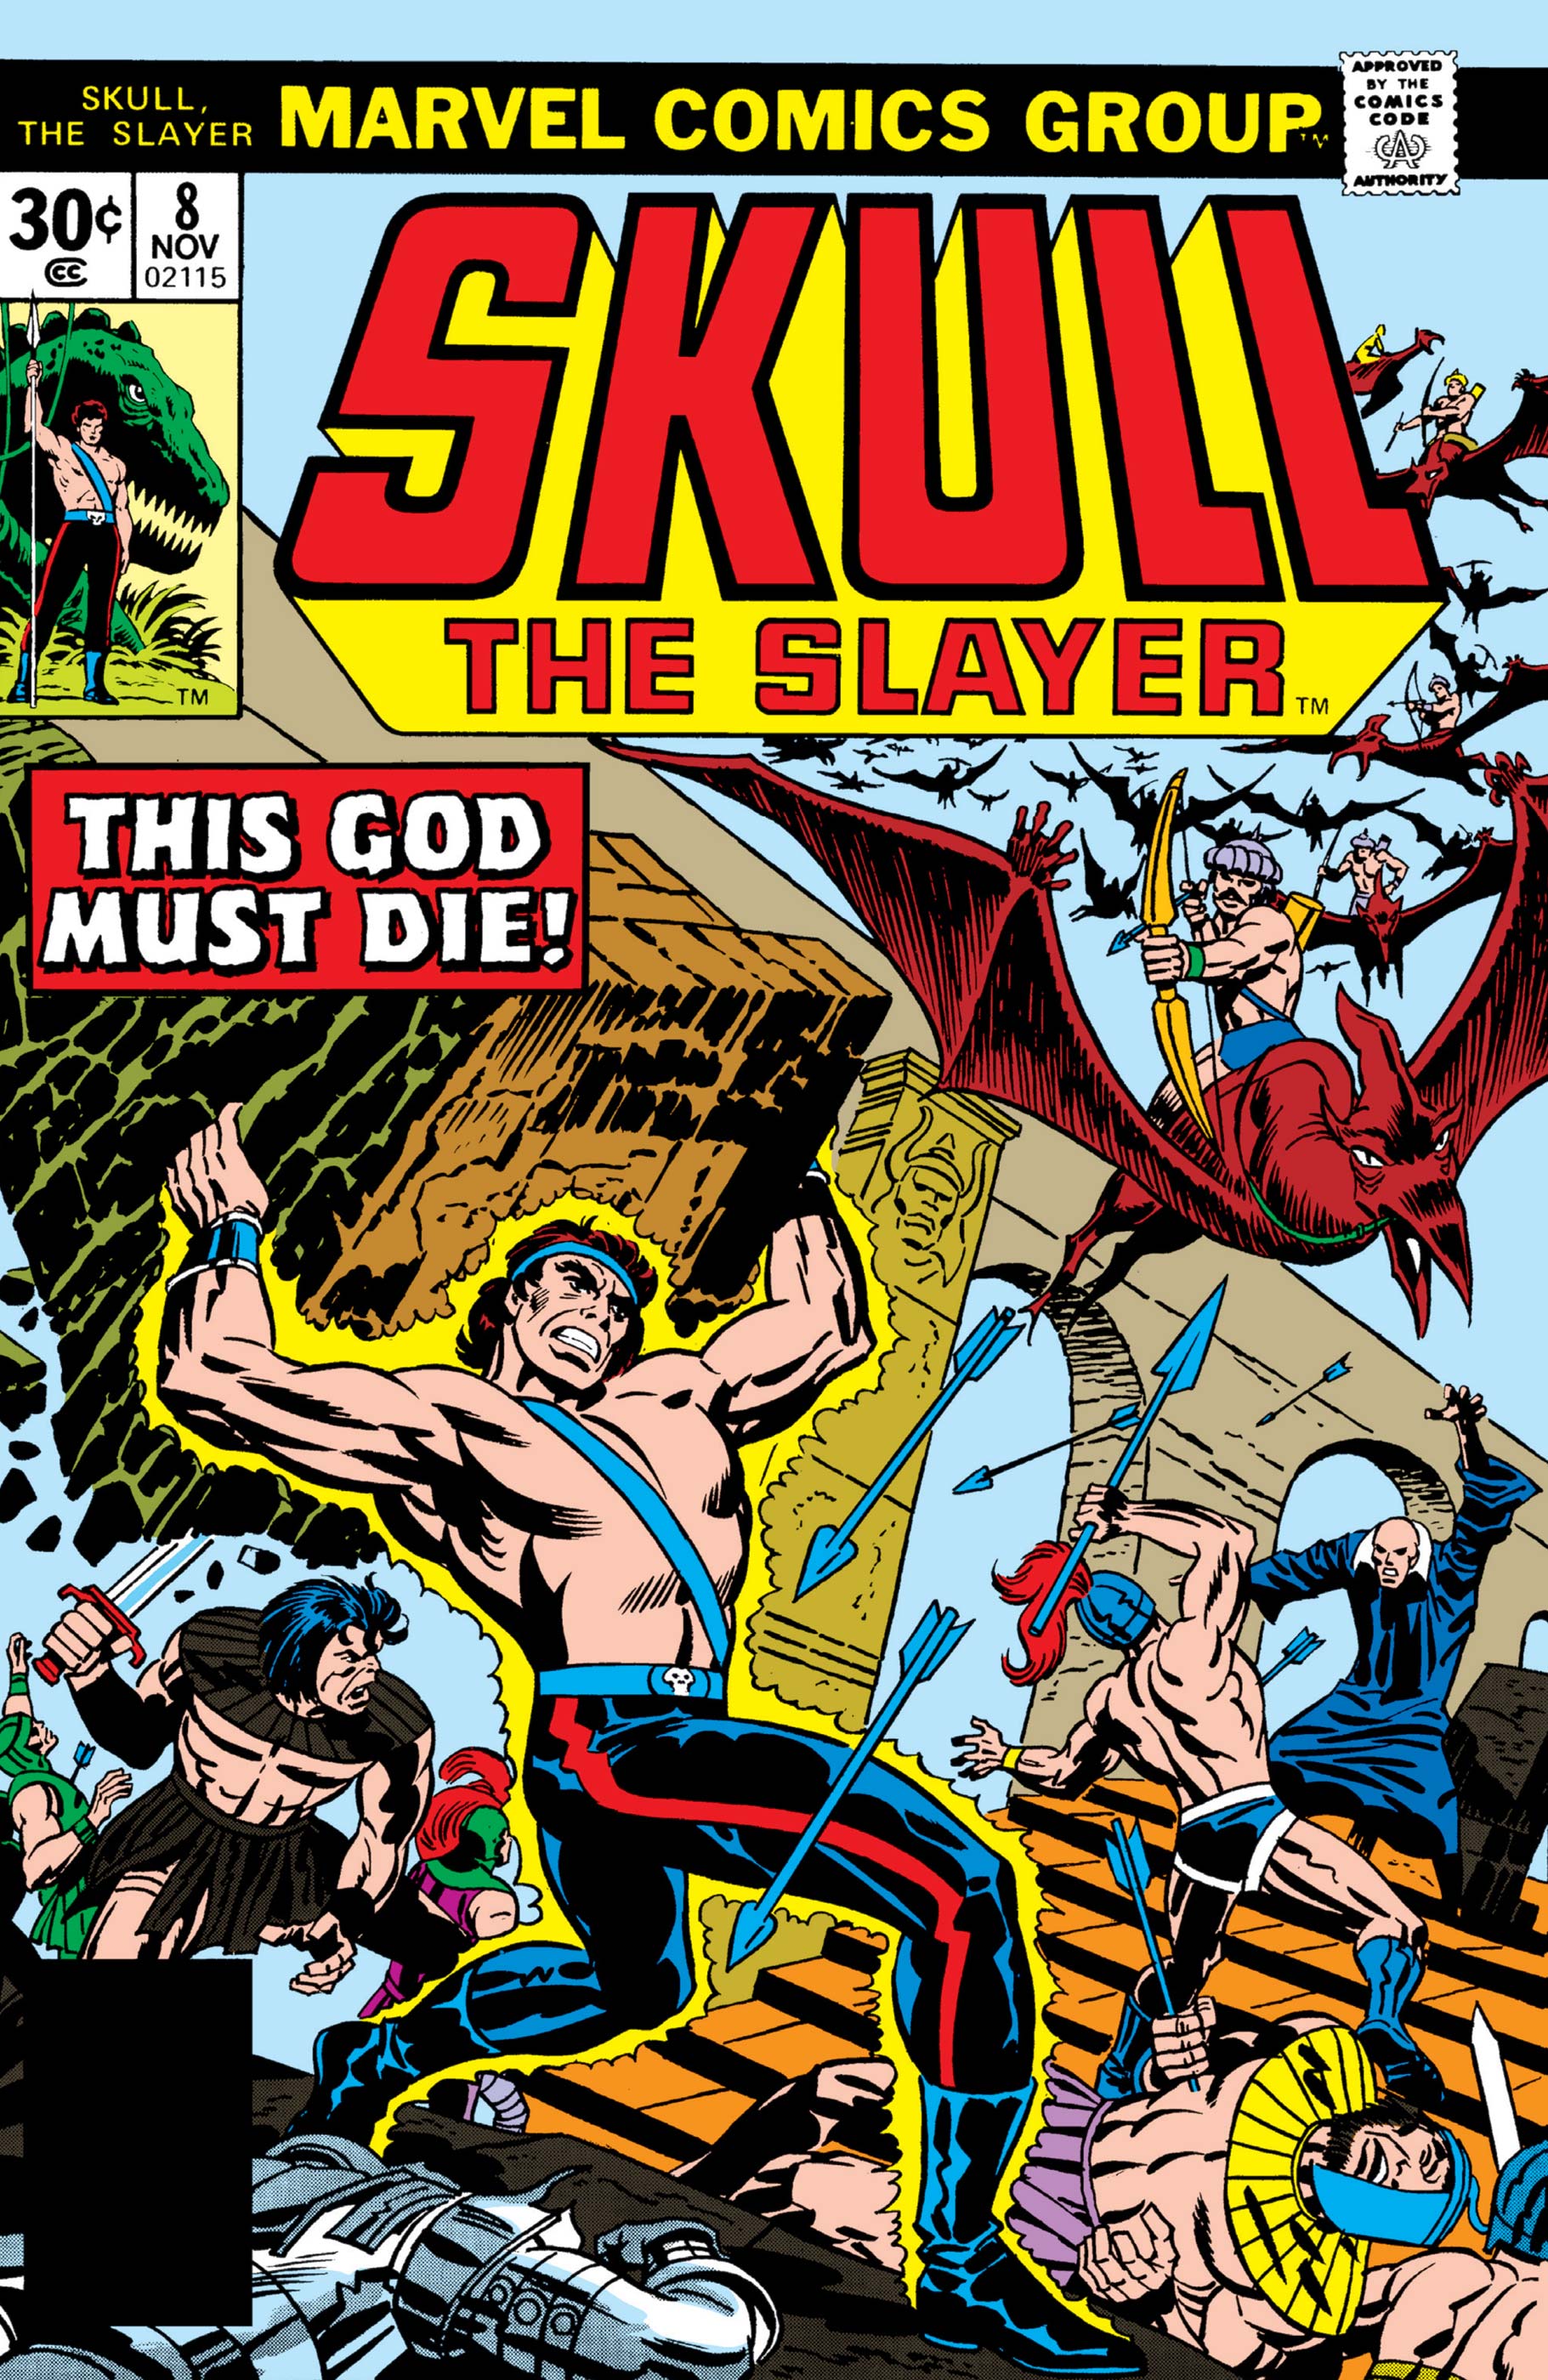 Skull the Slayer (1975) #8